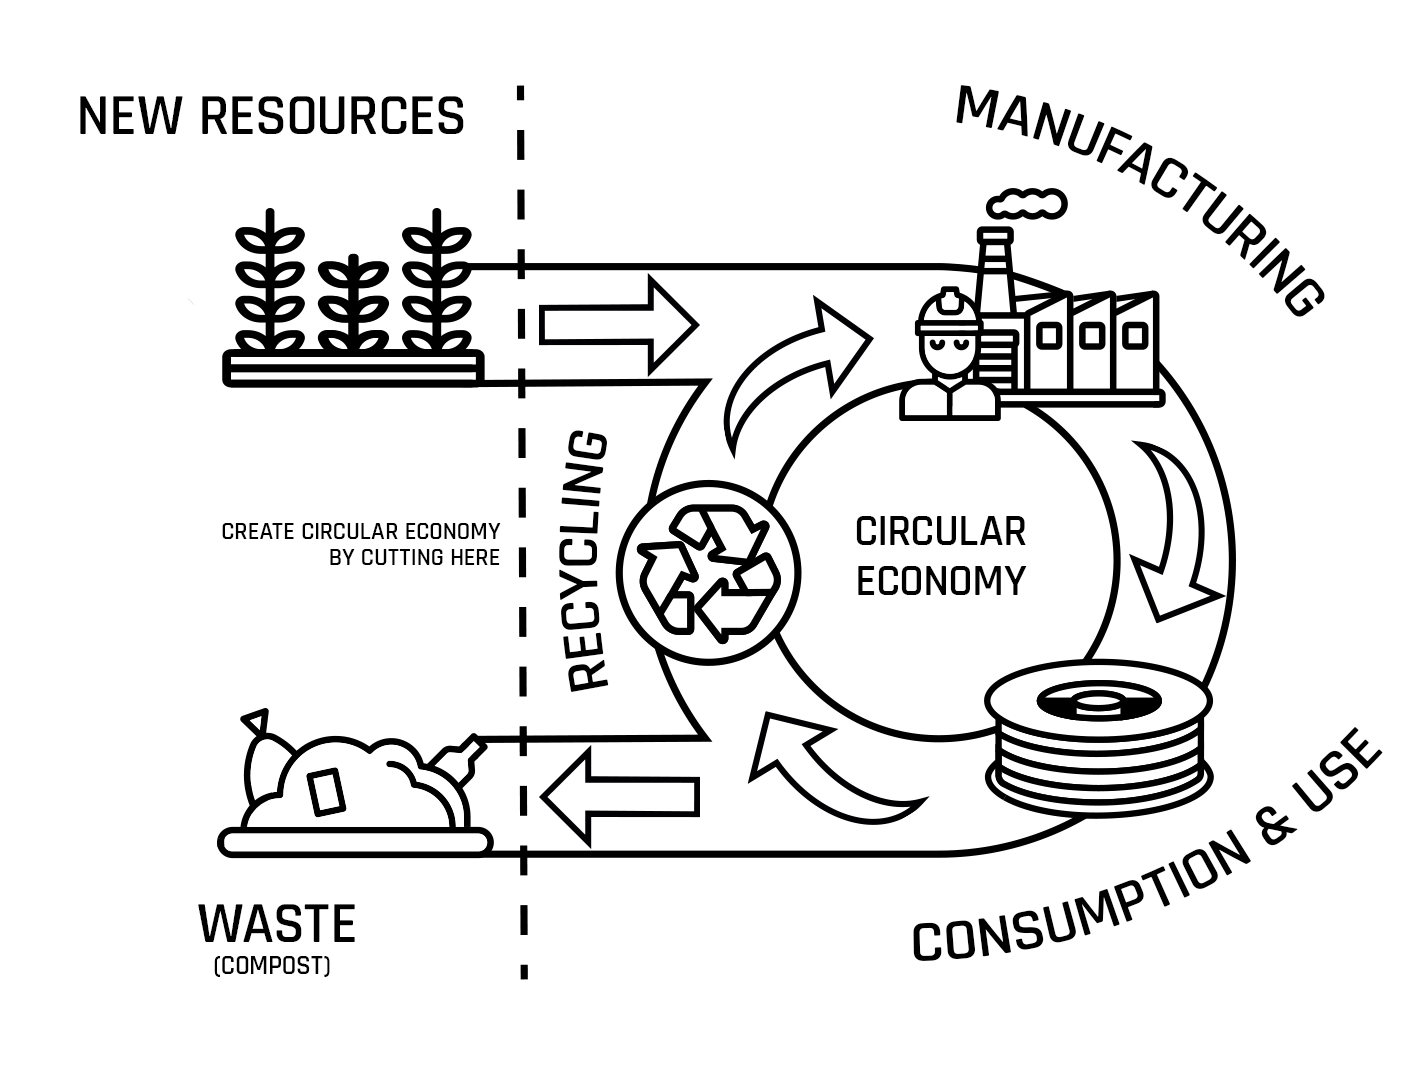 The principle of a circular economy. Image via Fillamentum.